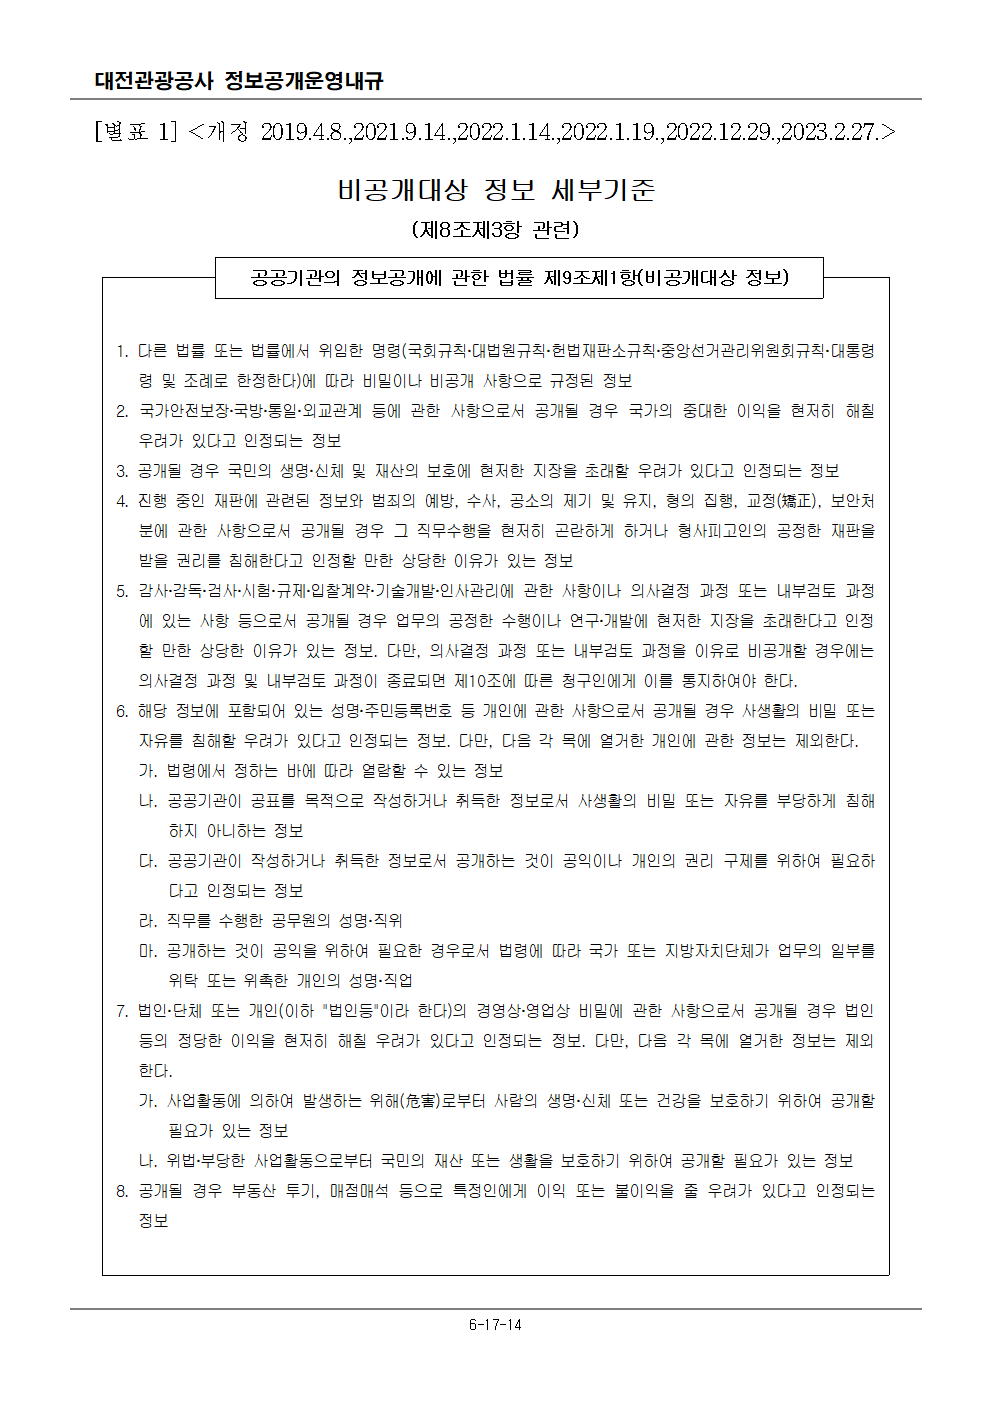 비공개대상 정보 세부기준(개정 2023.2.27.)